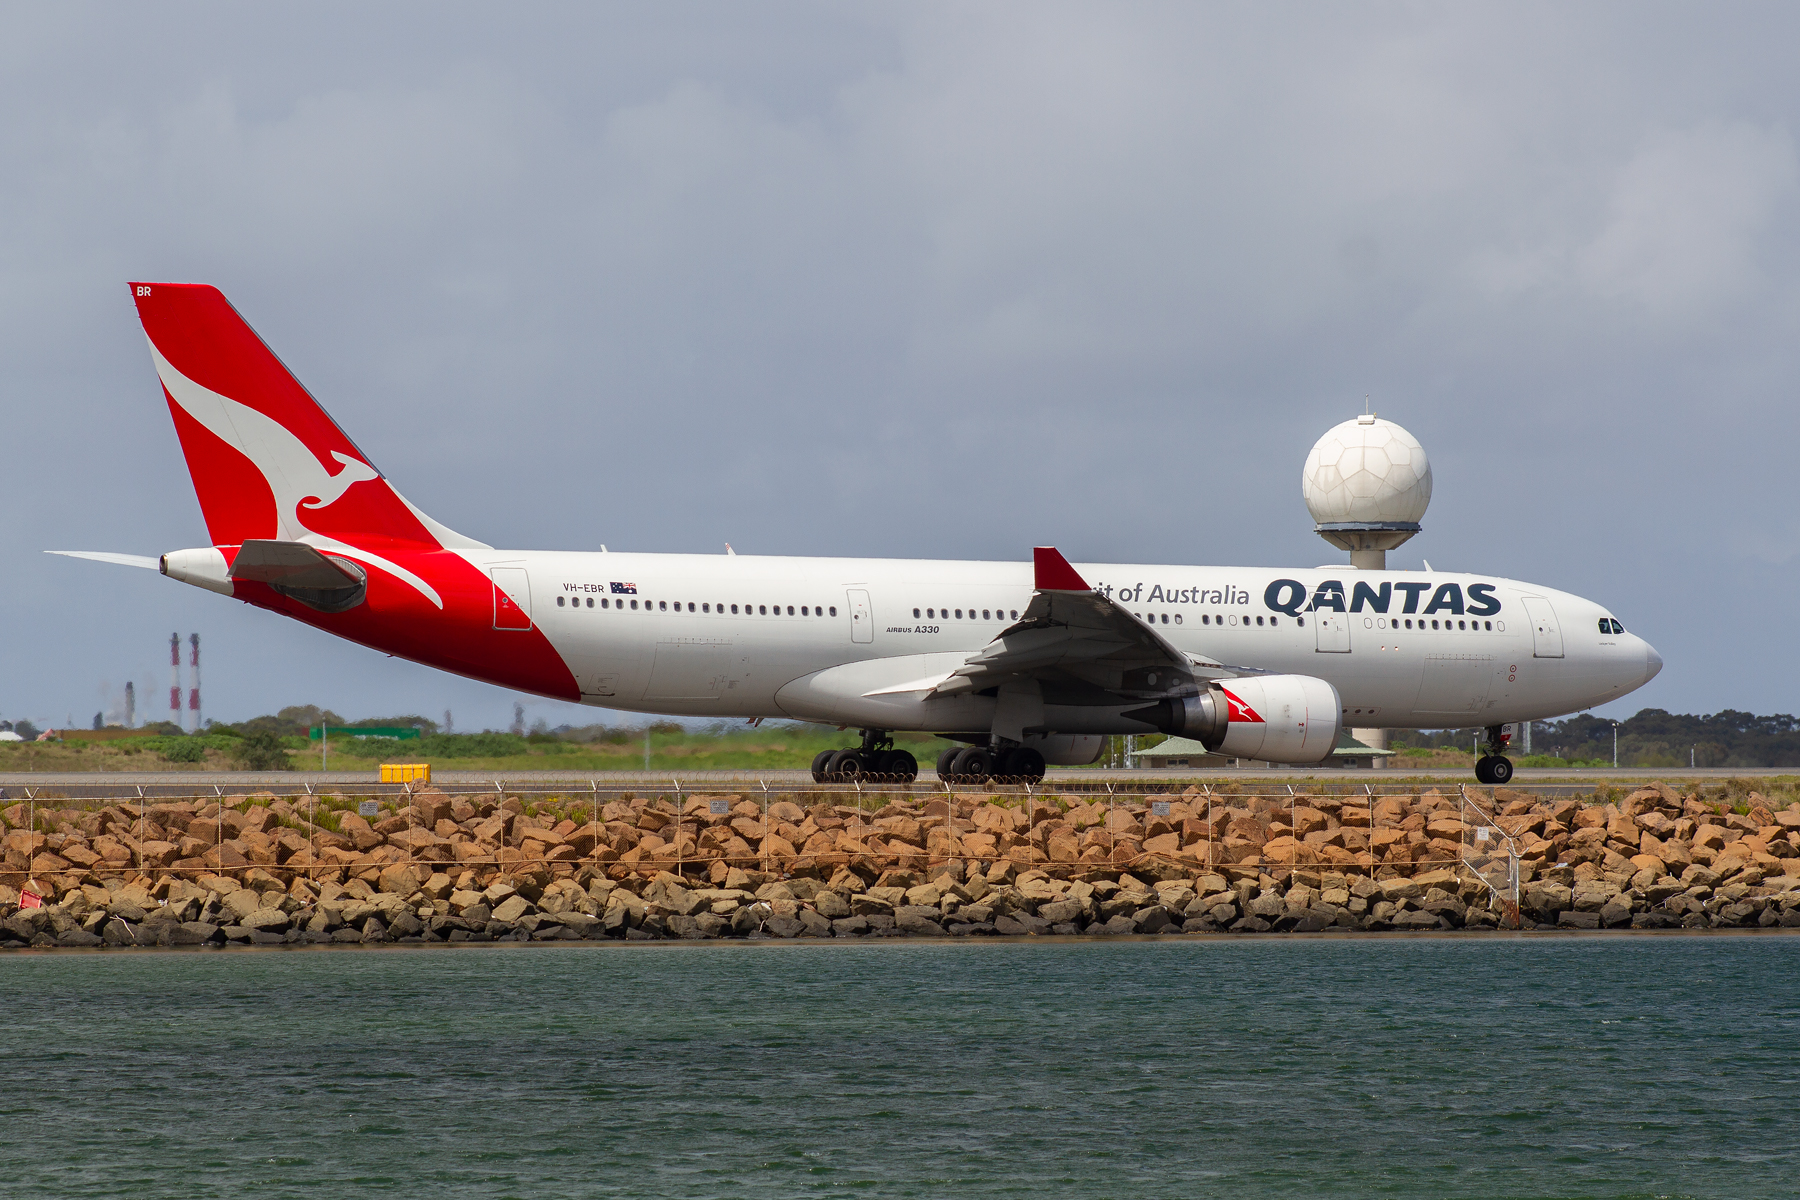 Qantas Airbus A330-200 VH-EBR at Kingsford Smith